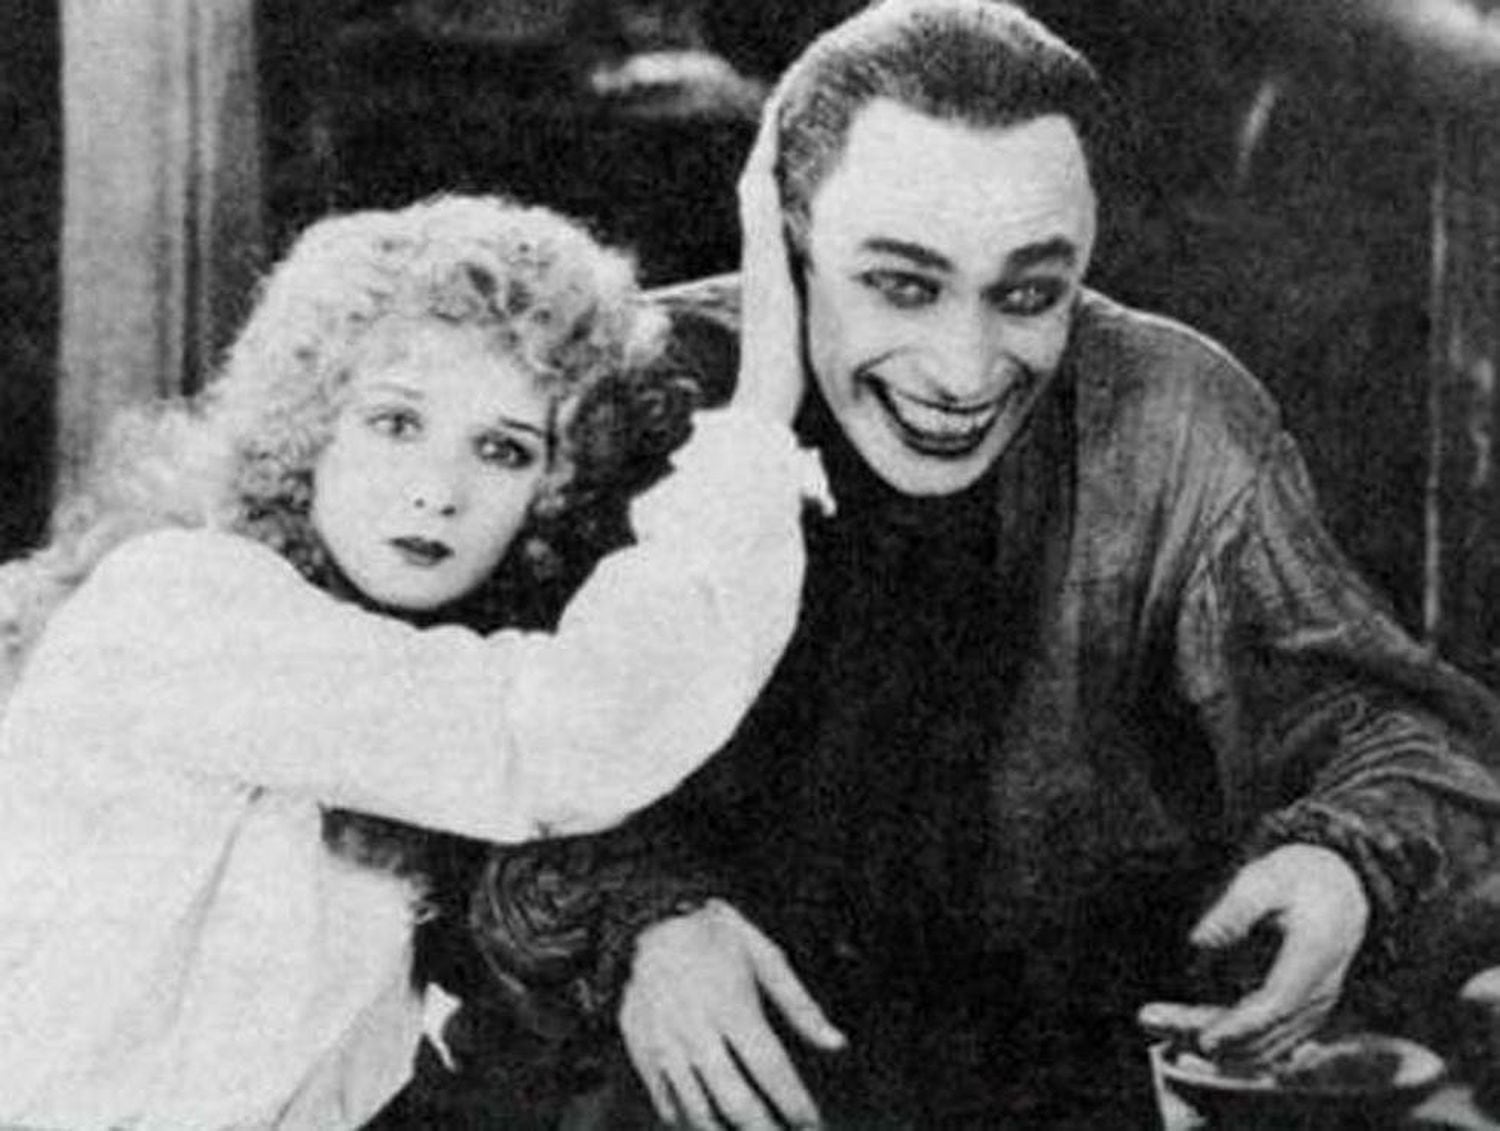 Cena do filme 'O homem que ri' (1928), cujo personagem inspirou o estilo do Coringa. 